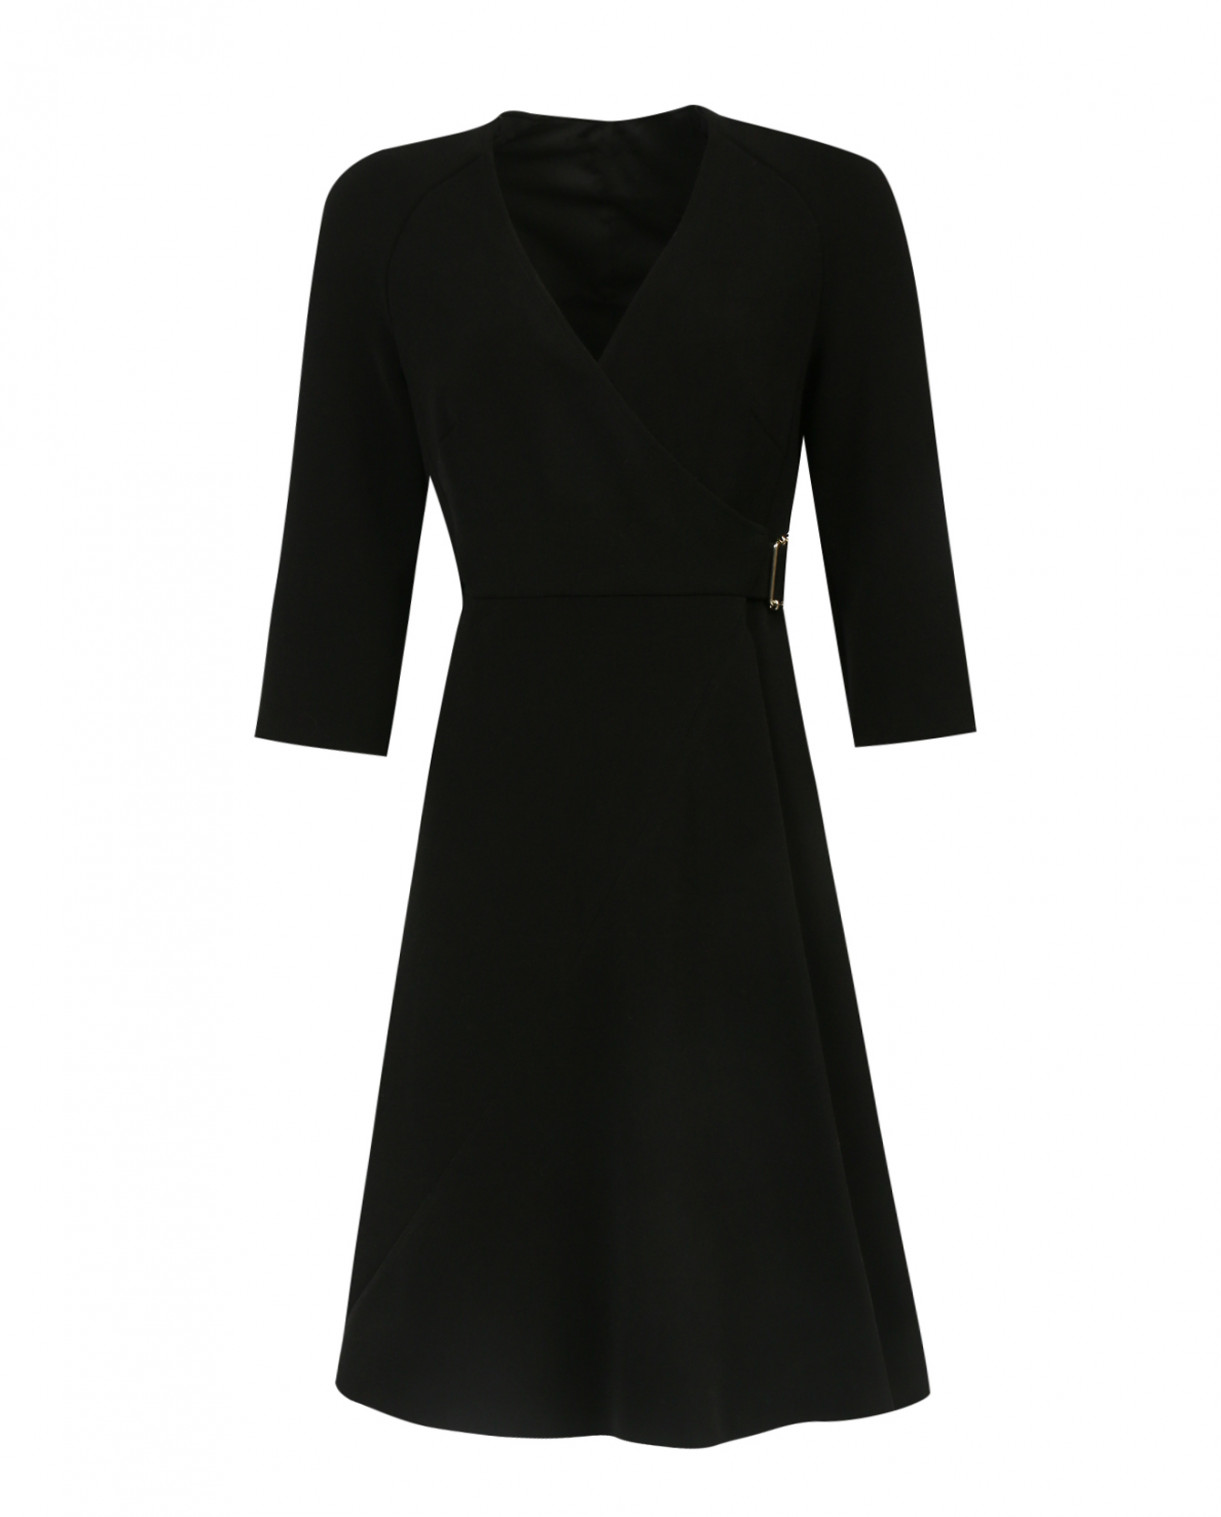 Платье с запахом и вырезом на груди Tara Jarmon  –  Общий вид  – Цвет:  Черный